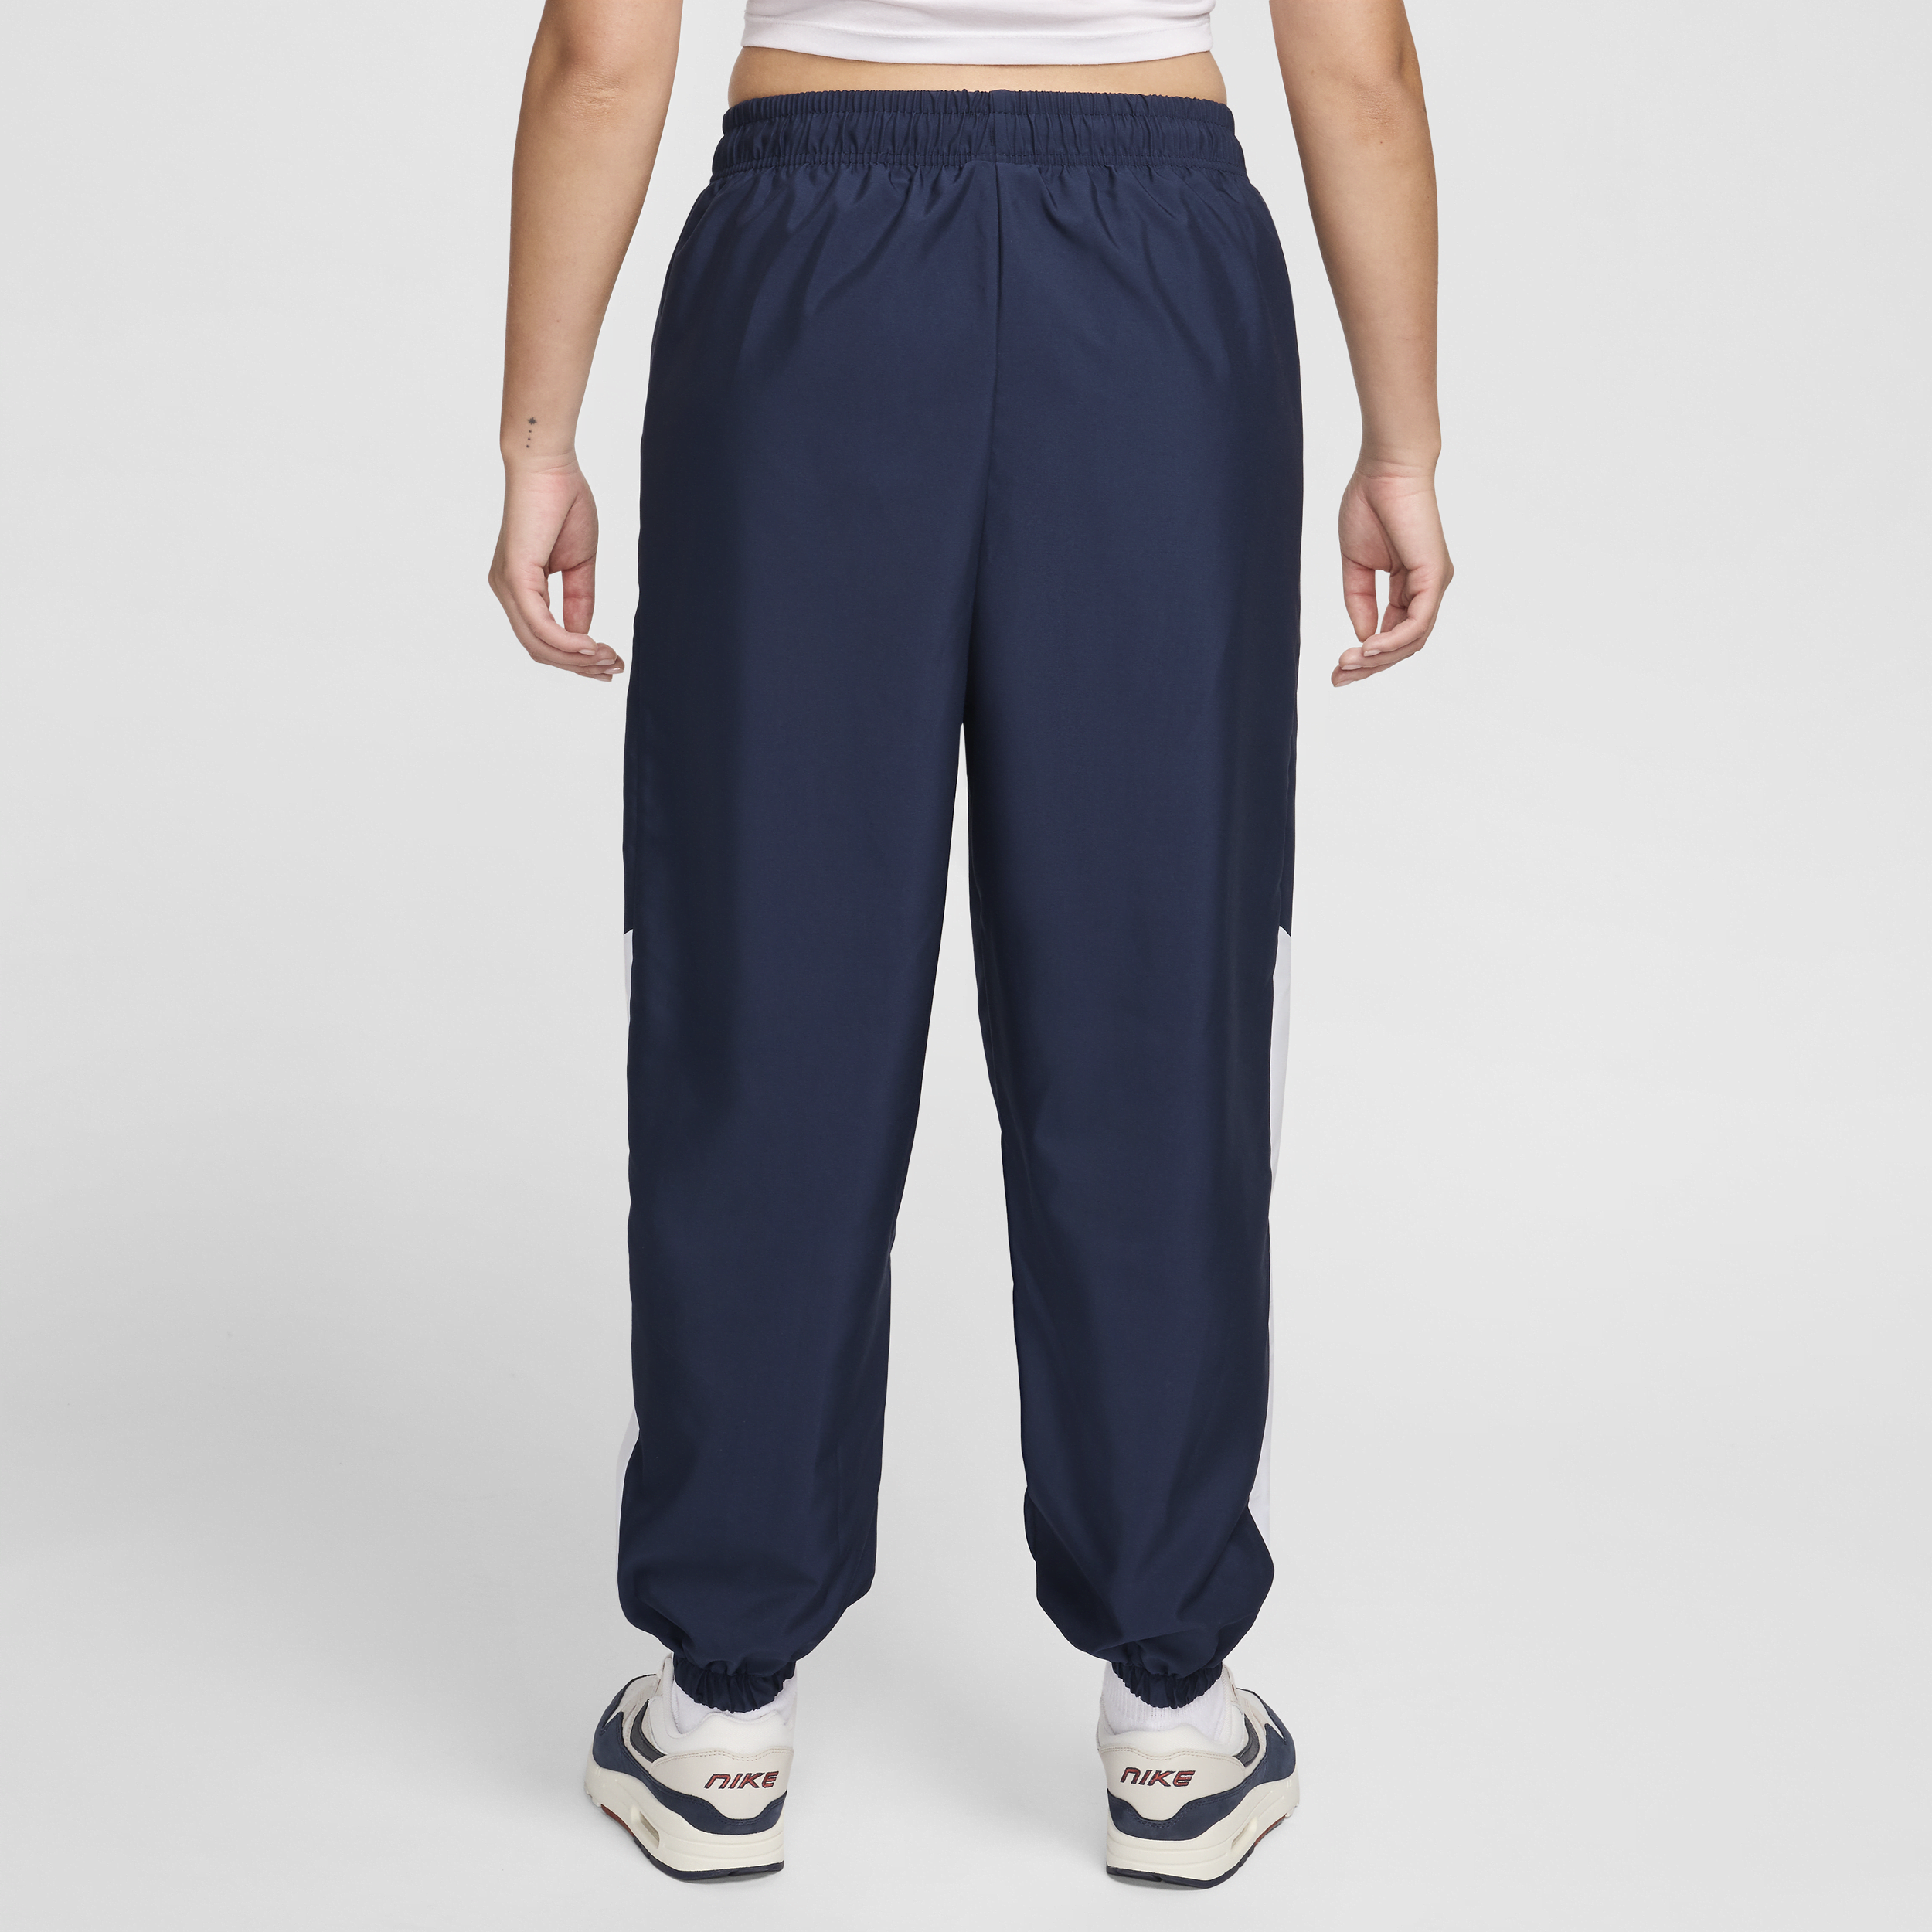 Nike Sportswear geweven joggingbroek voor dames Blauw